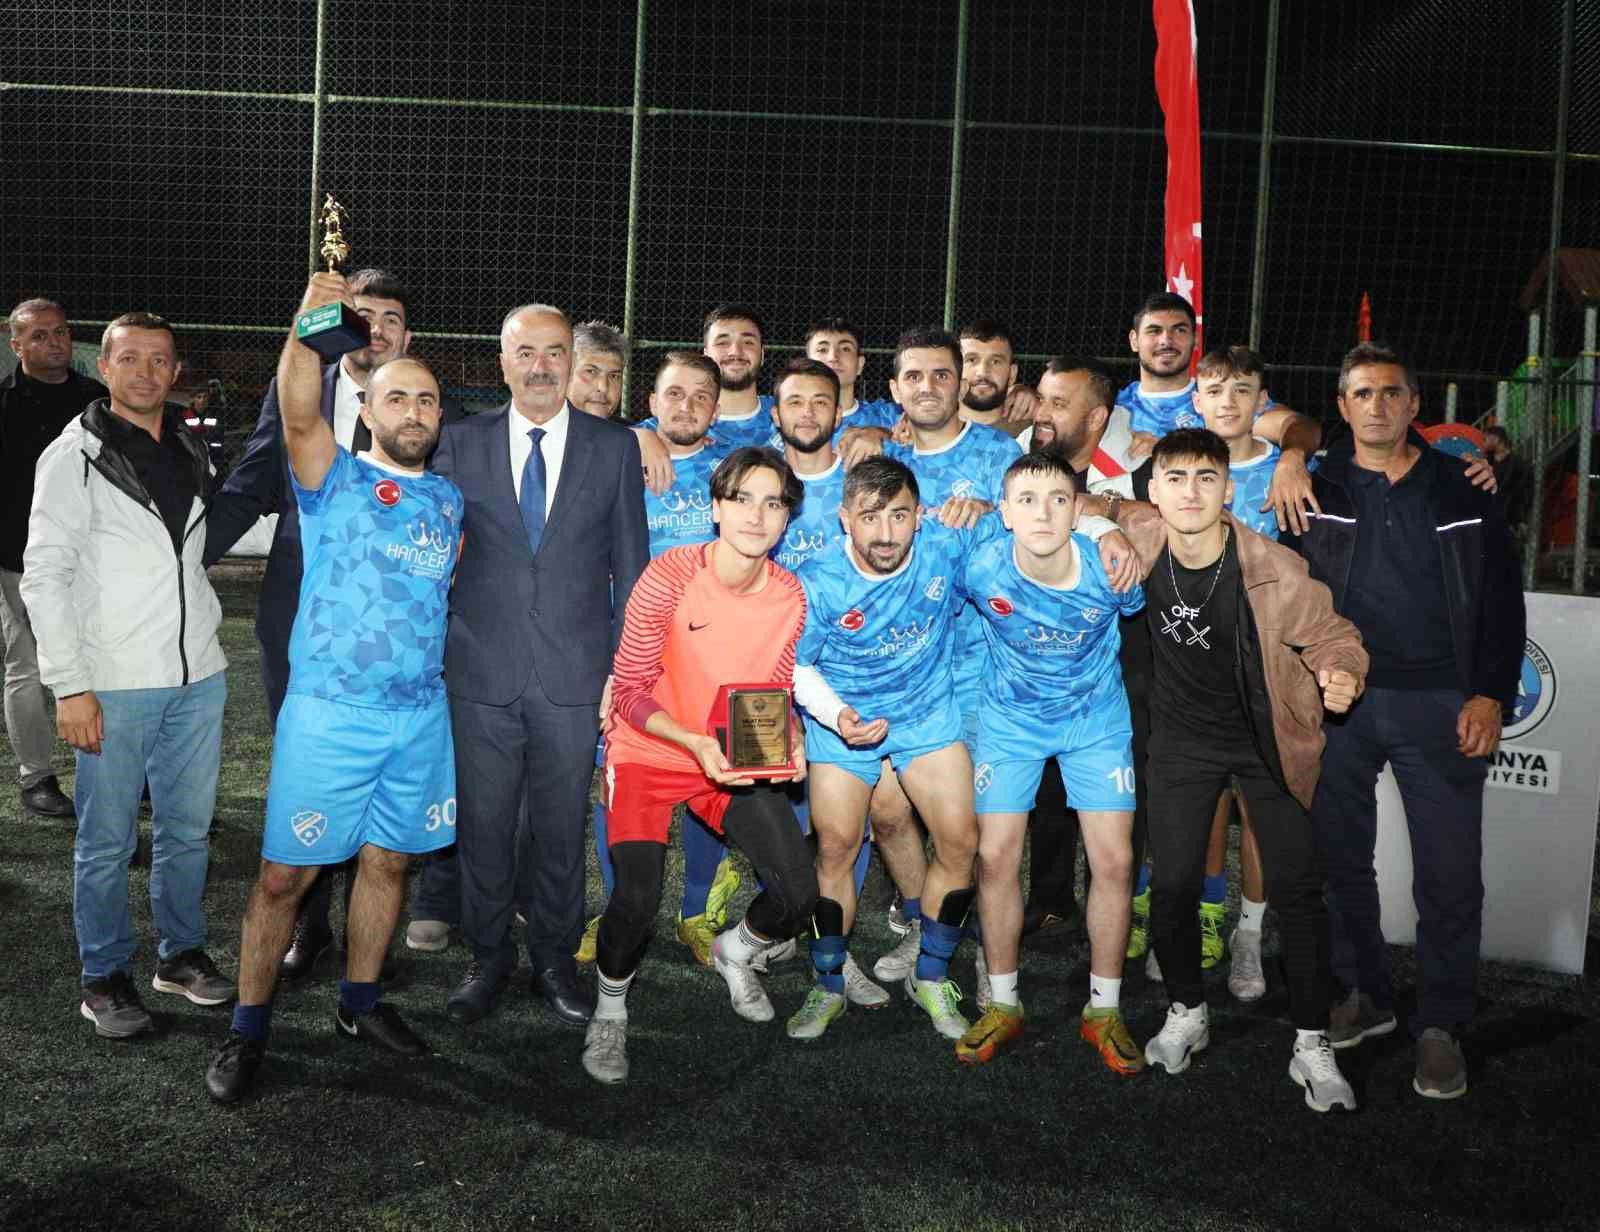 Nejat Biyediç futbol turnuvası şampiyonu Orhaniye